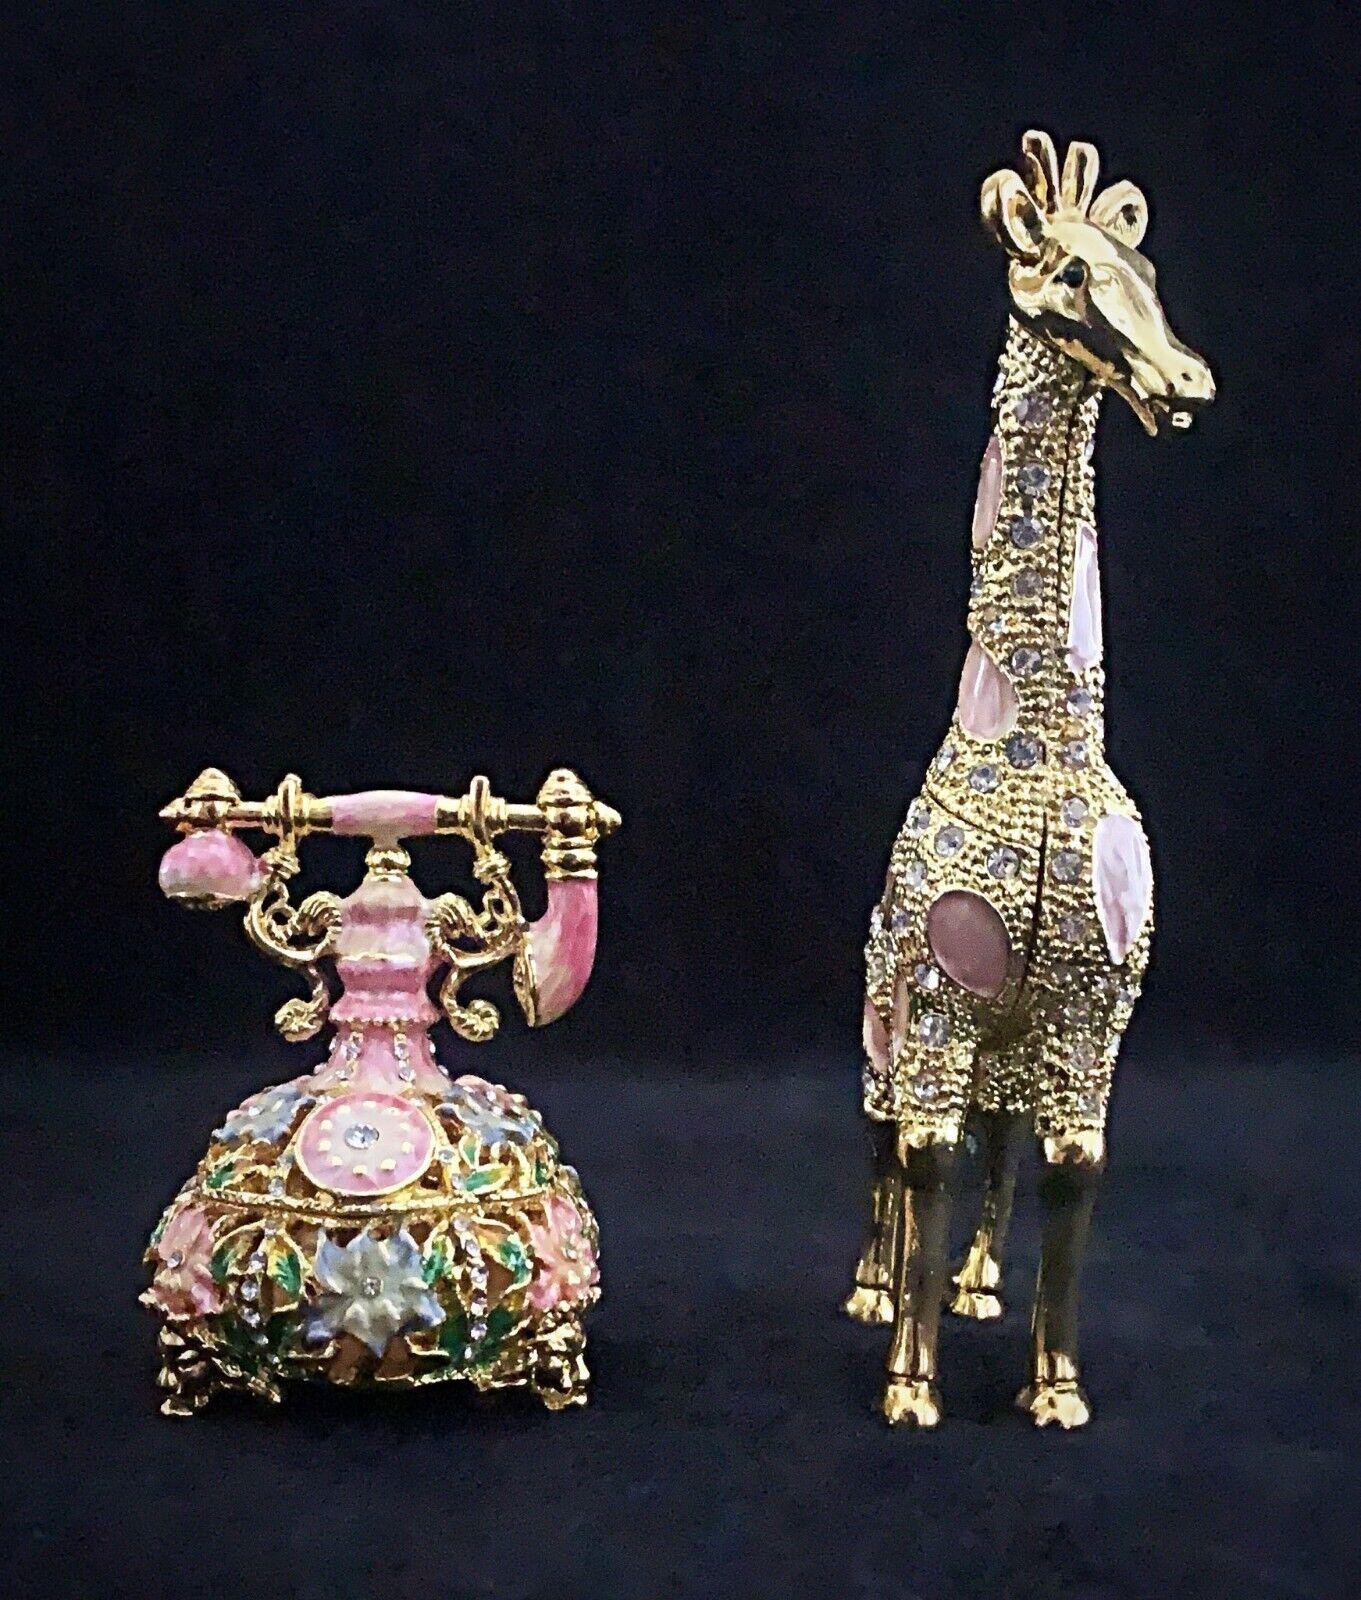 Bejeweled Large Giraffe Trinket Box & Telephone 